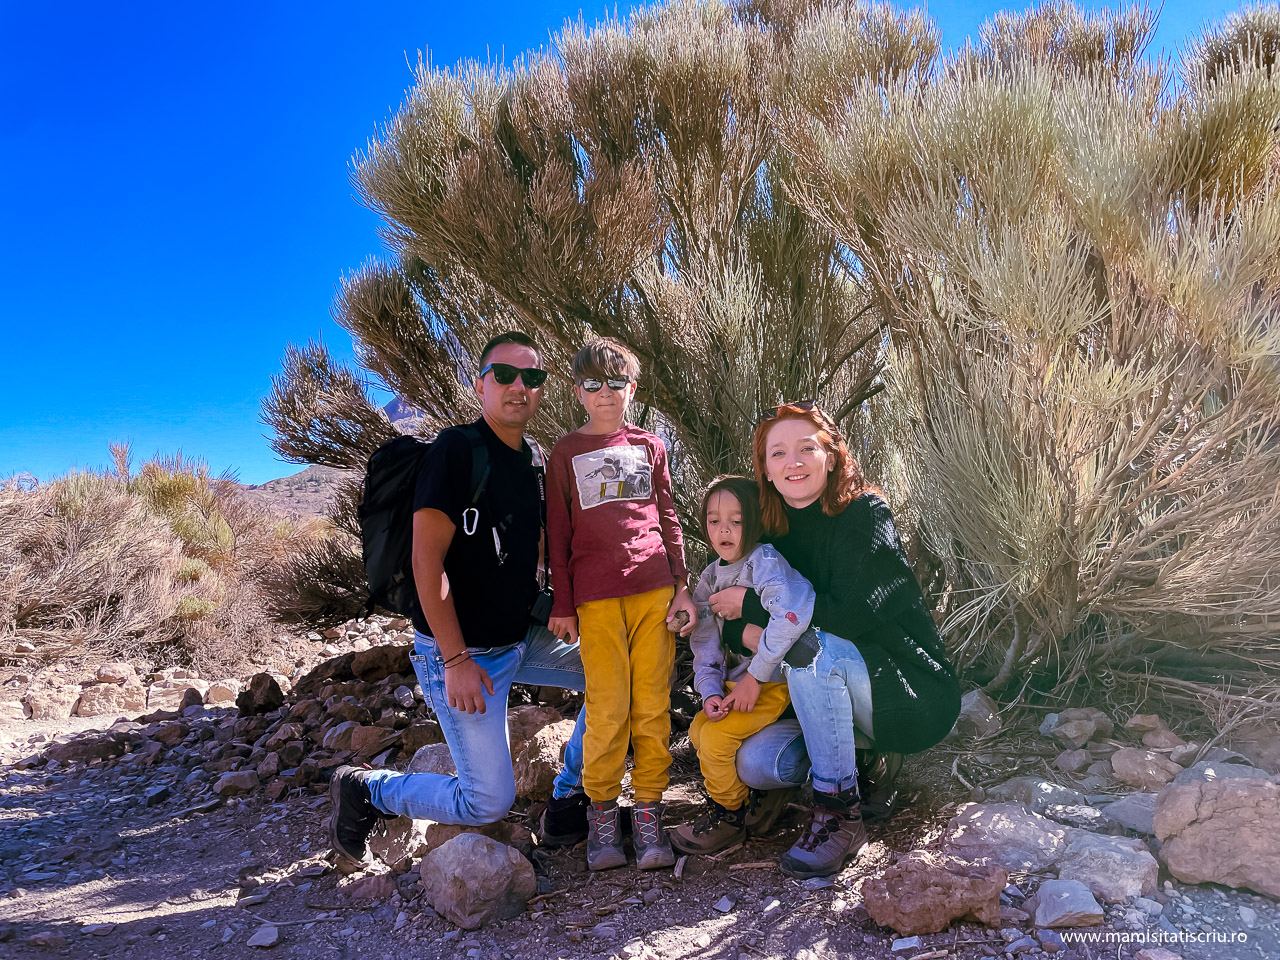 Cactus urias Teide